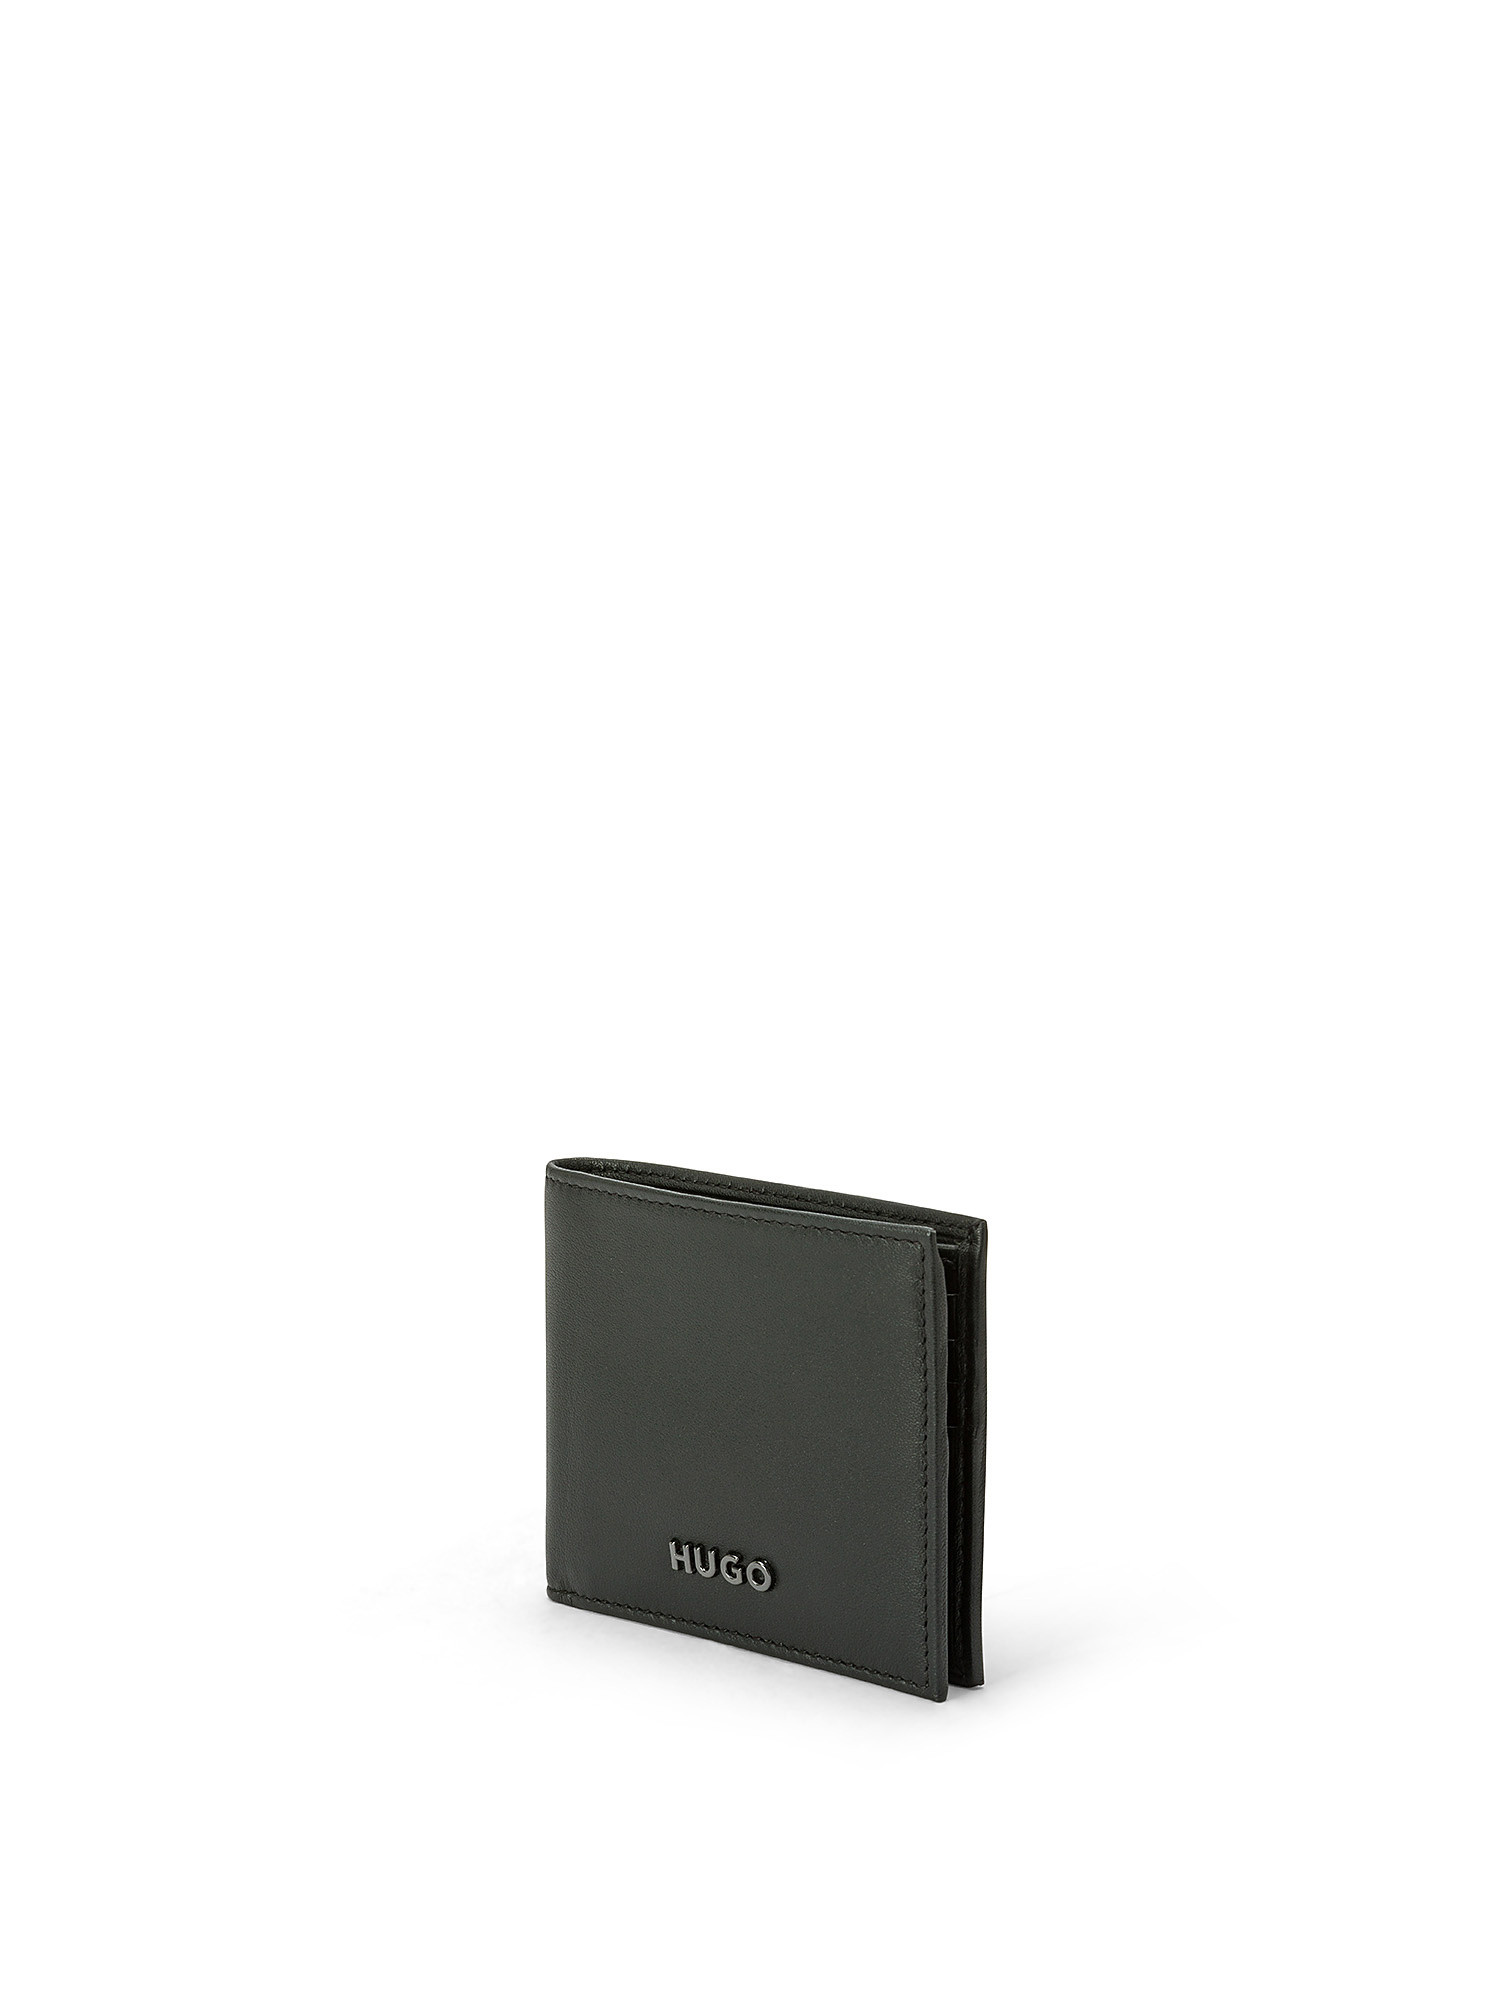 Hugo - Leather wallet, Black, large image number 1